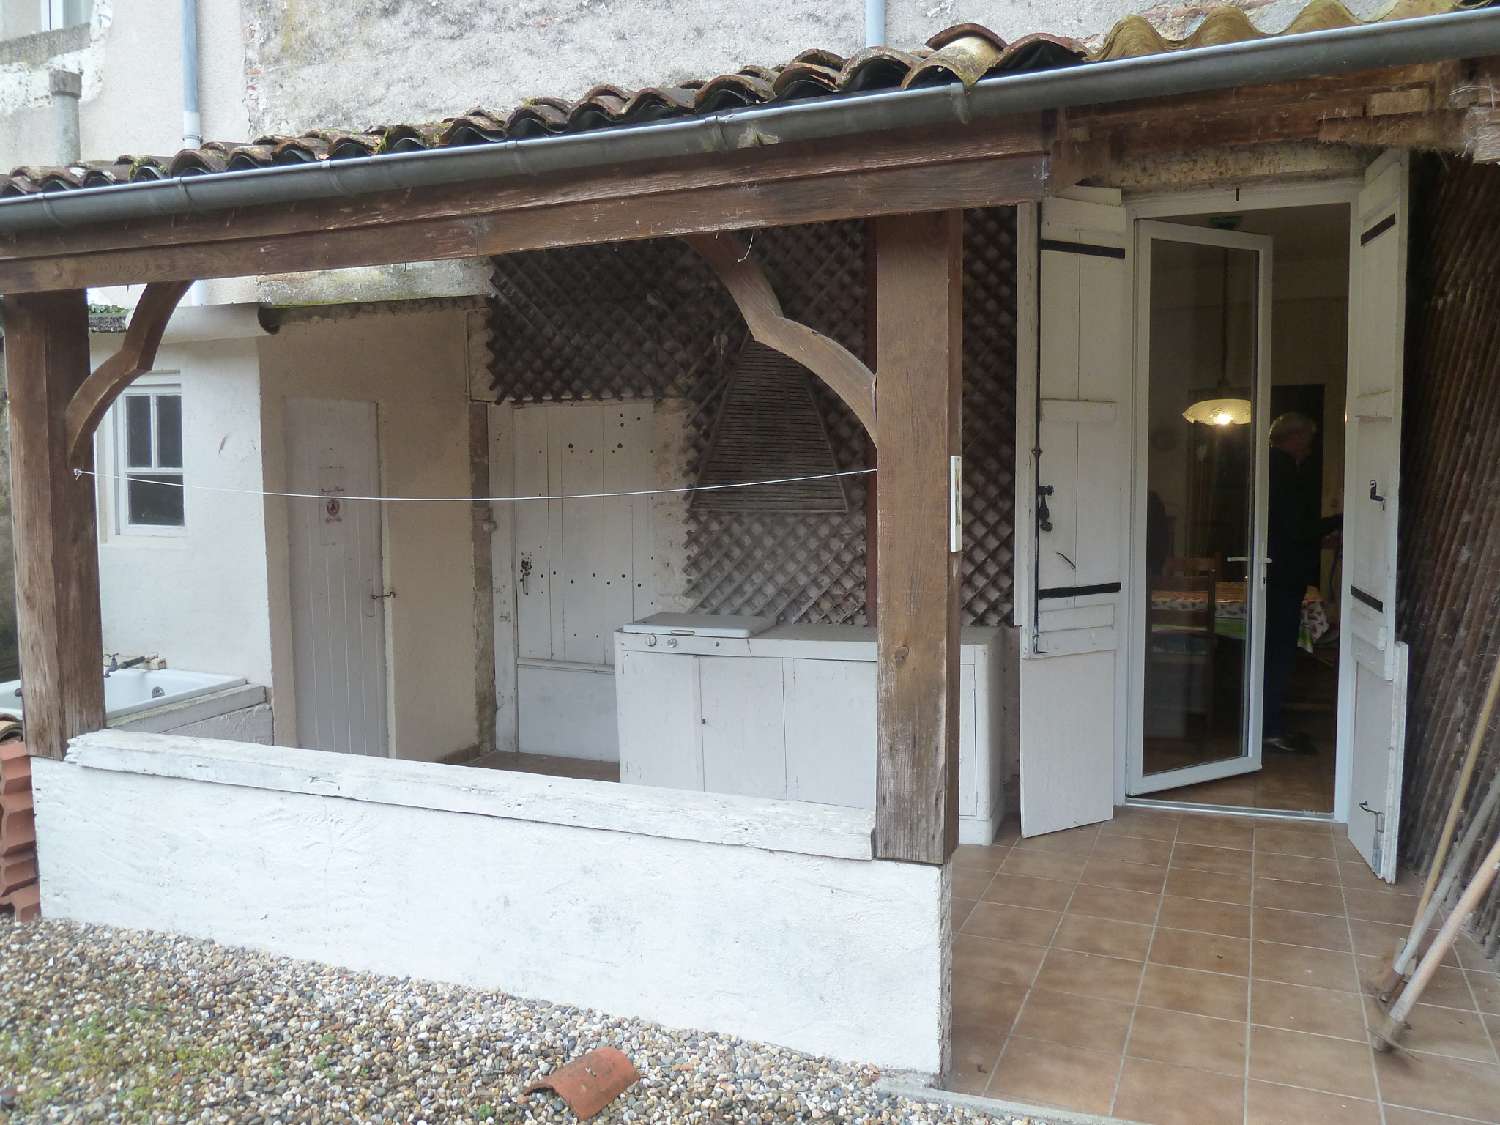  à vendre maison de village Castelmoron-sur-Lot Lot-et-Garonne 4